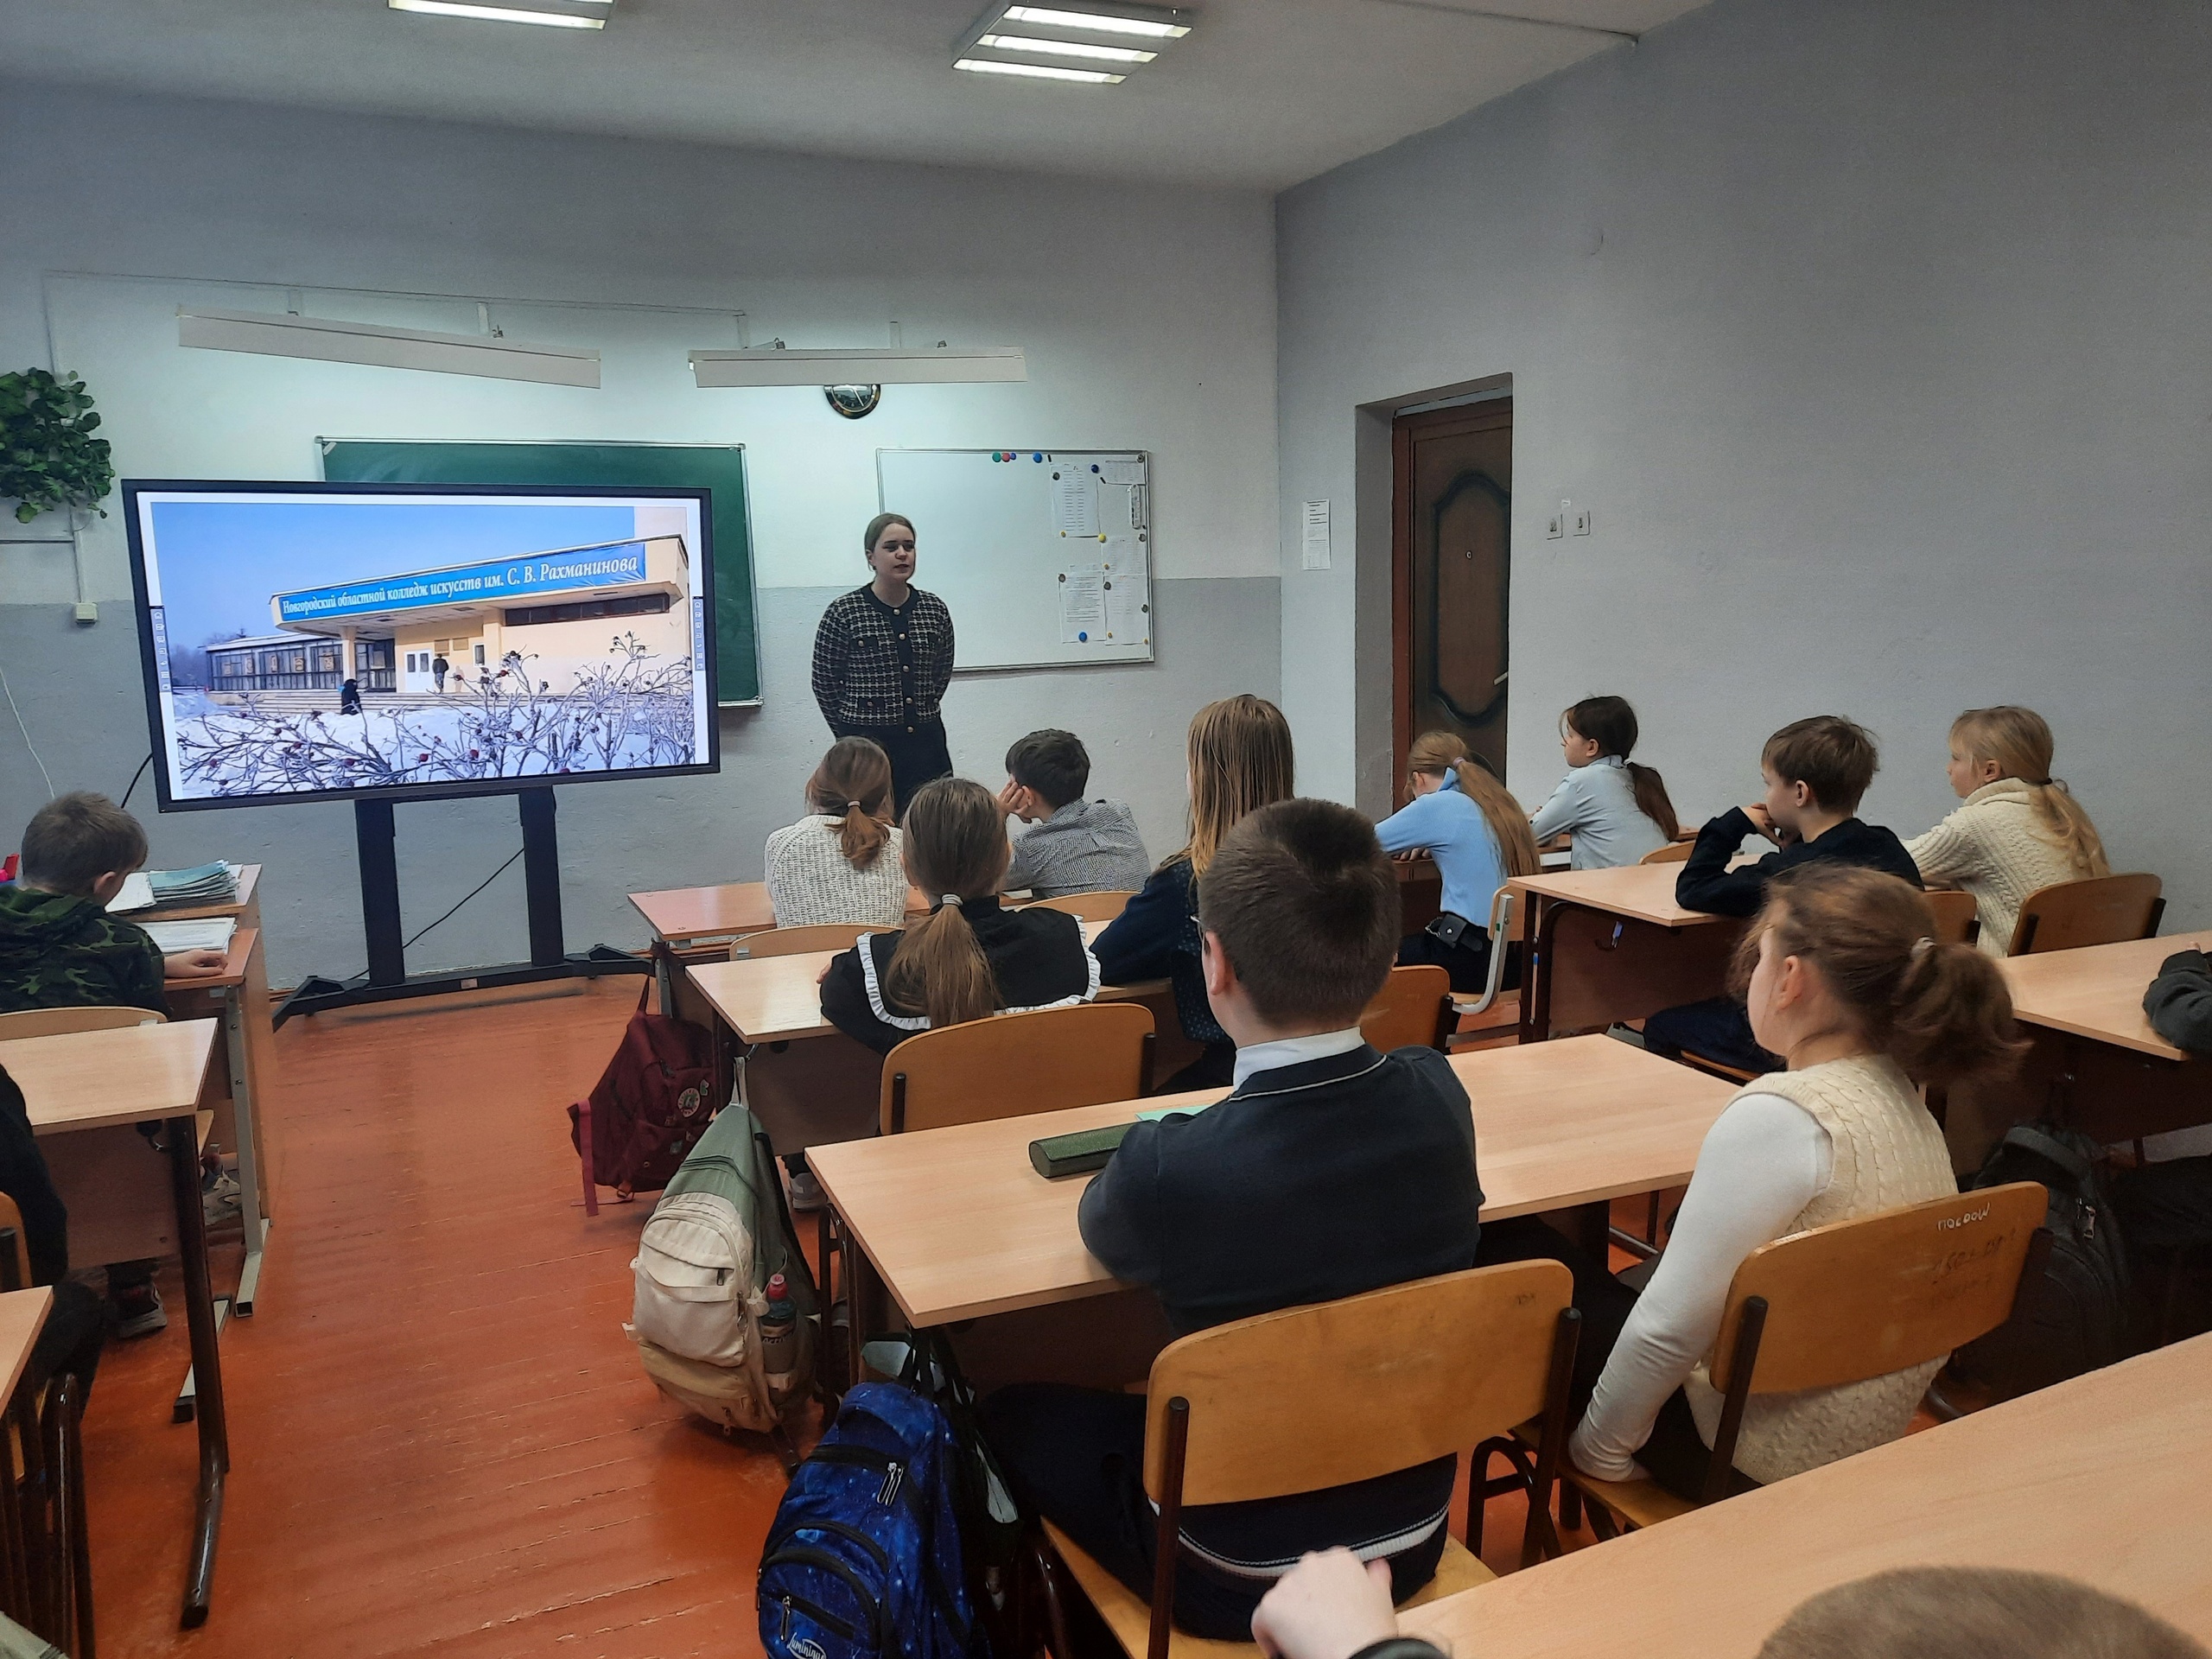 Сегодня, 24 января, в преддверии Дня всех студентов( 25 января) в 5 классе прошла встреча со студенткой 2 курса Новгородского колледжа искусств им. С.В. Рахманинова.